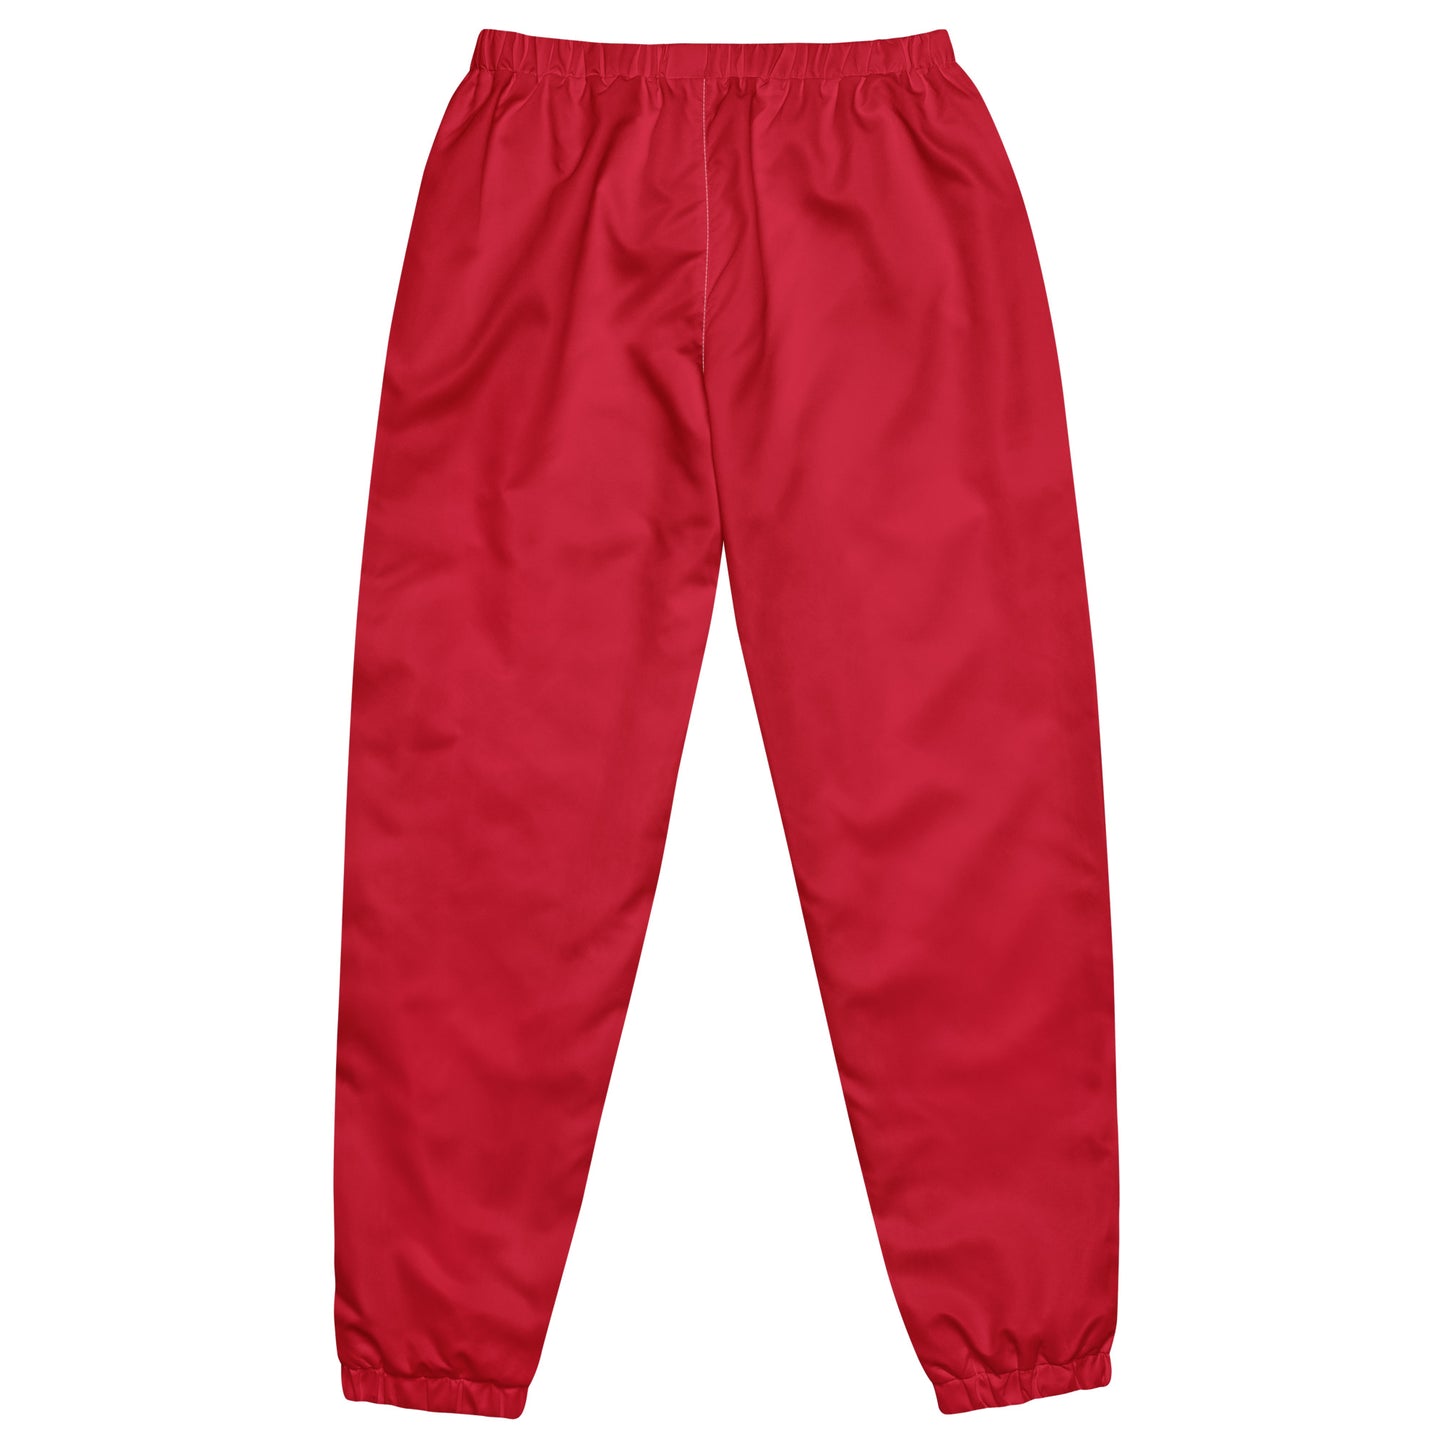 Pantalon de survêtement unisexe rouge